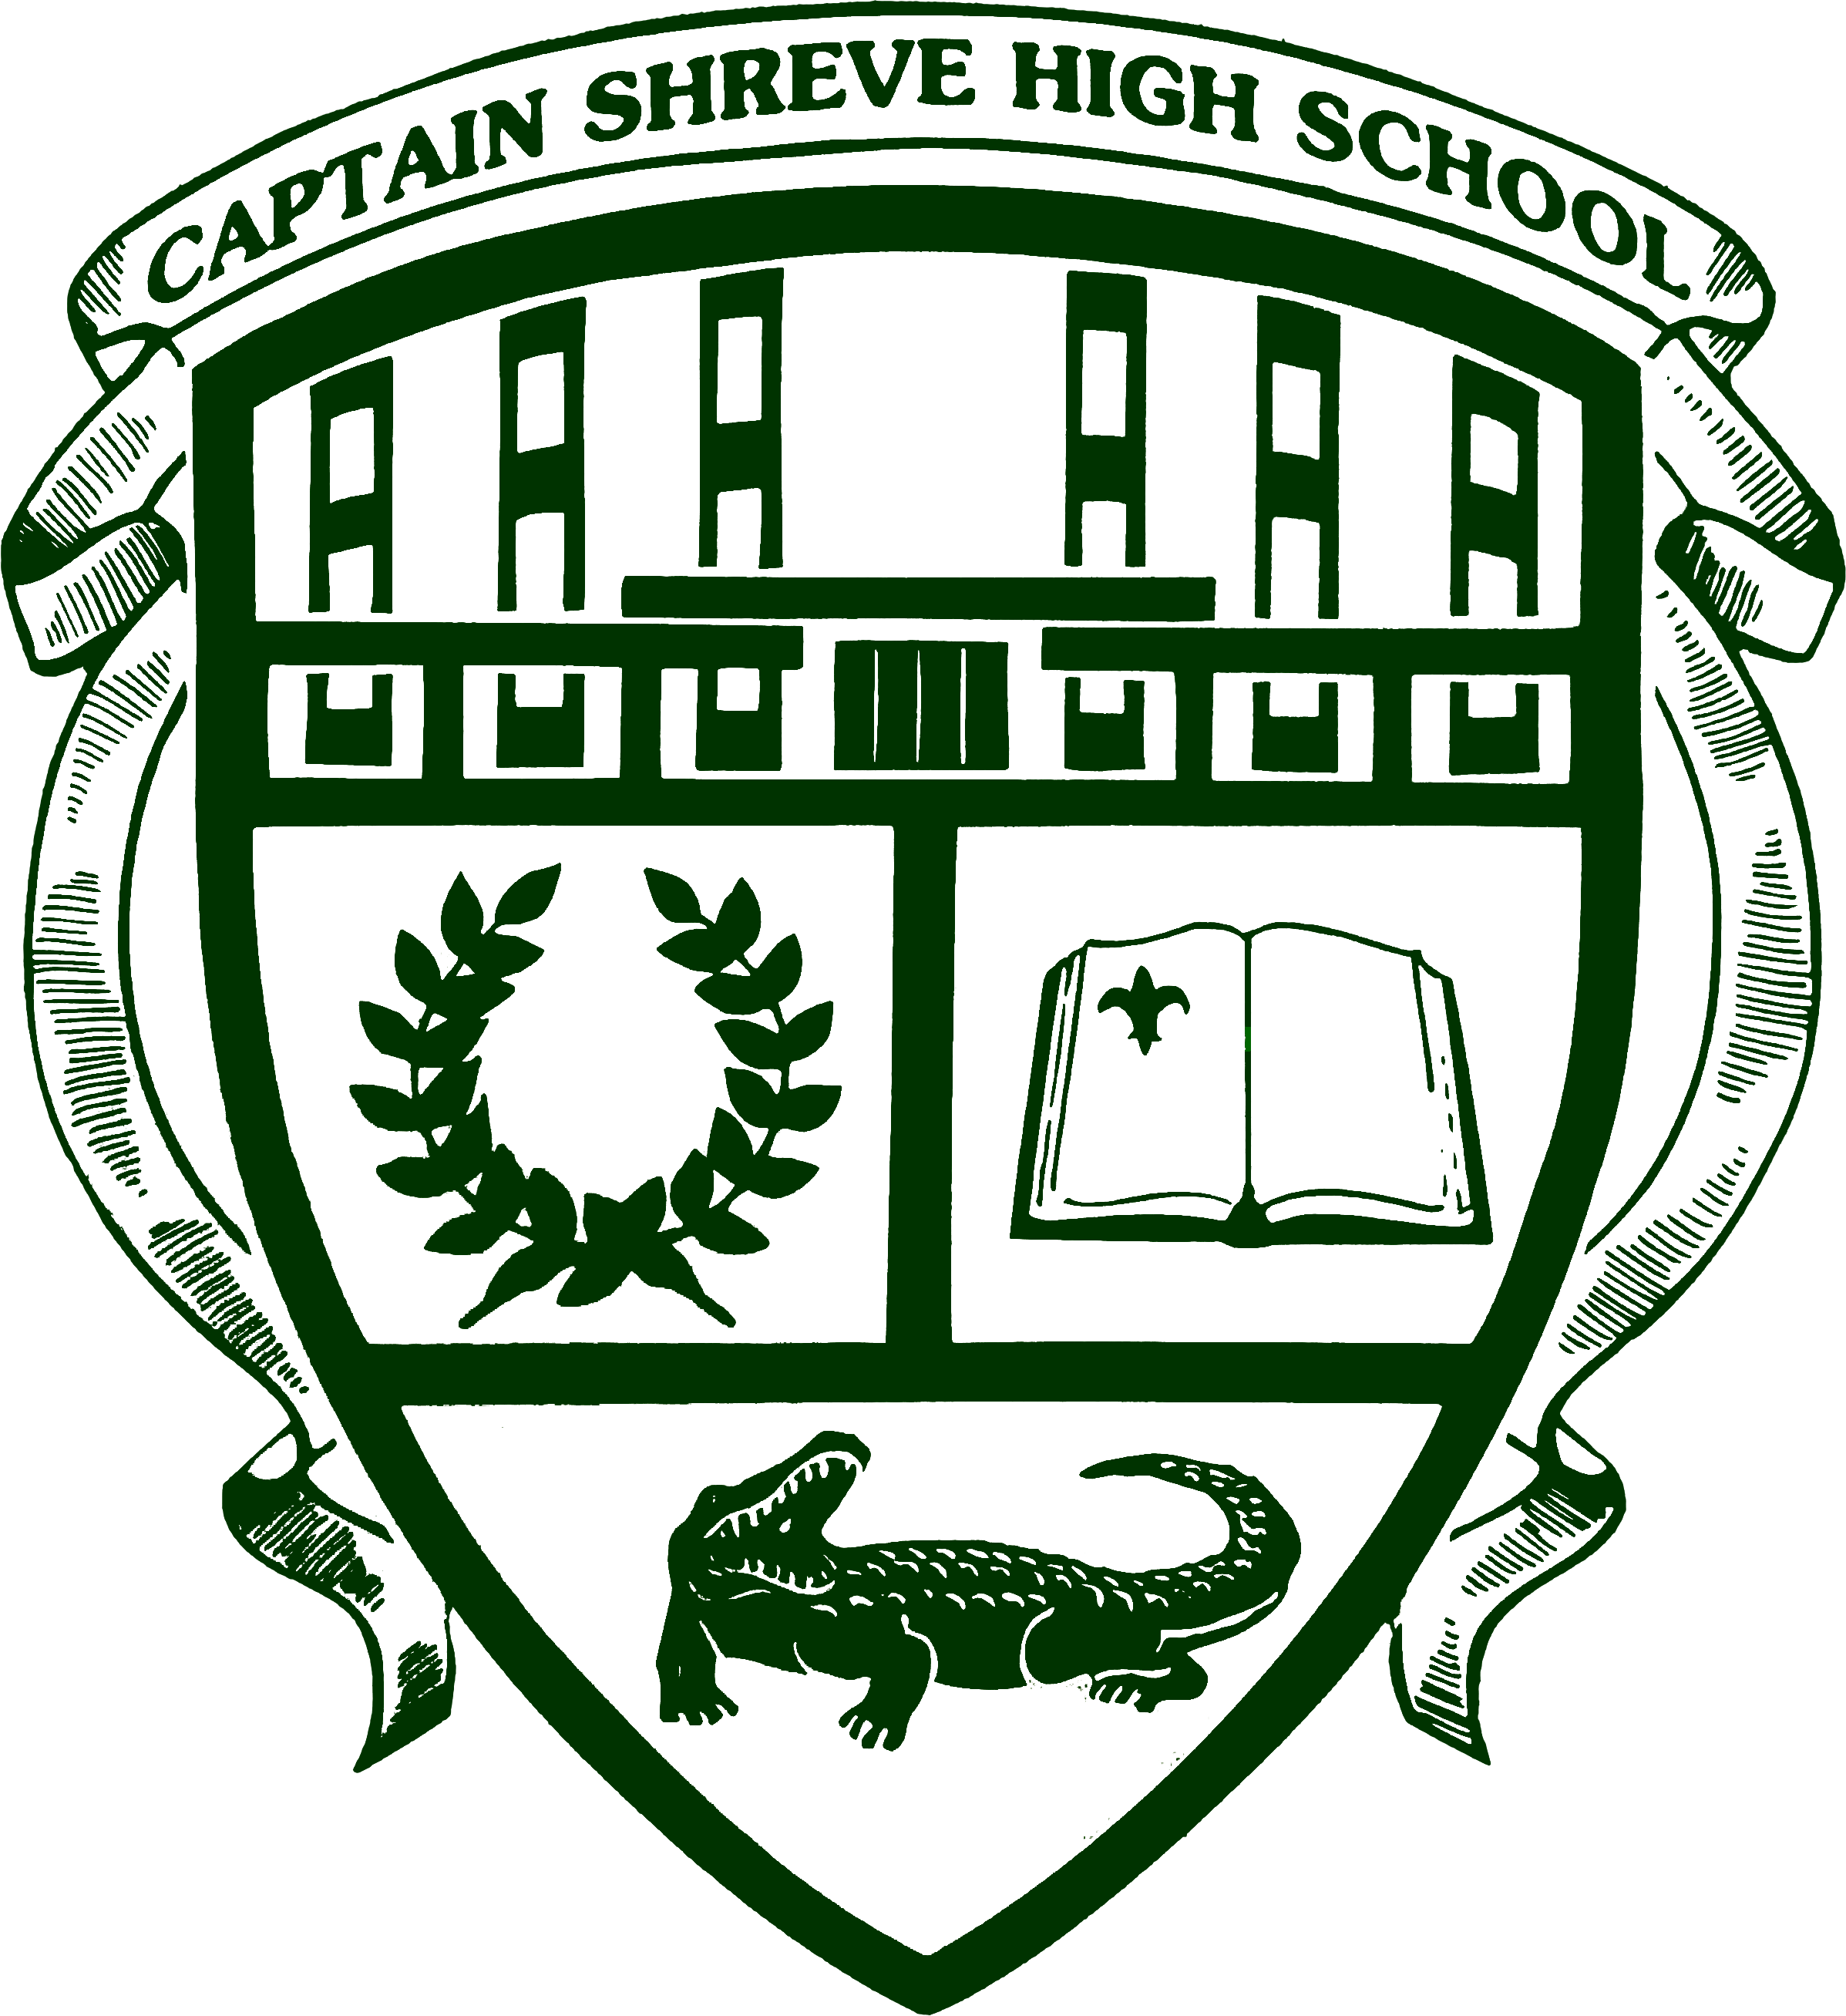 Captain Shreve Seal